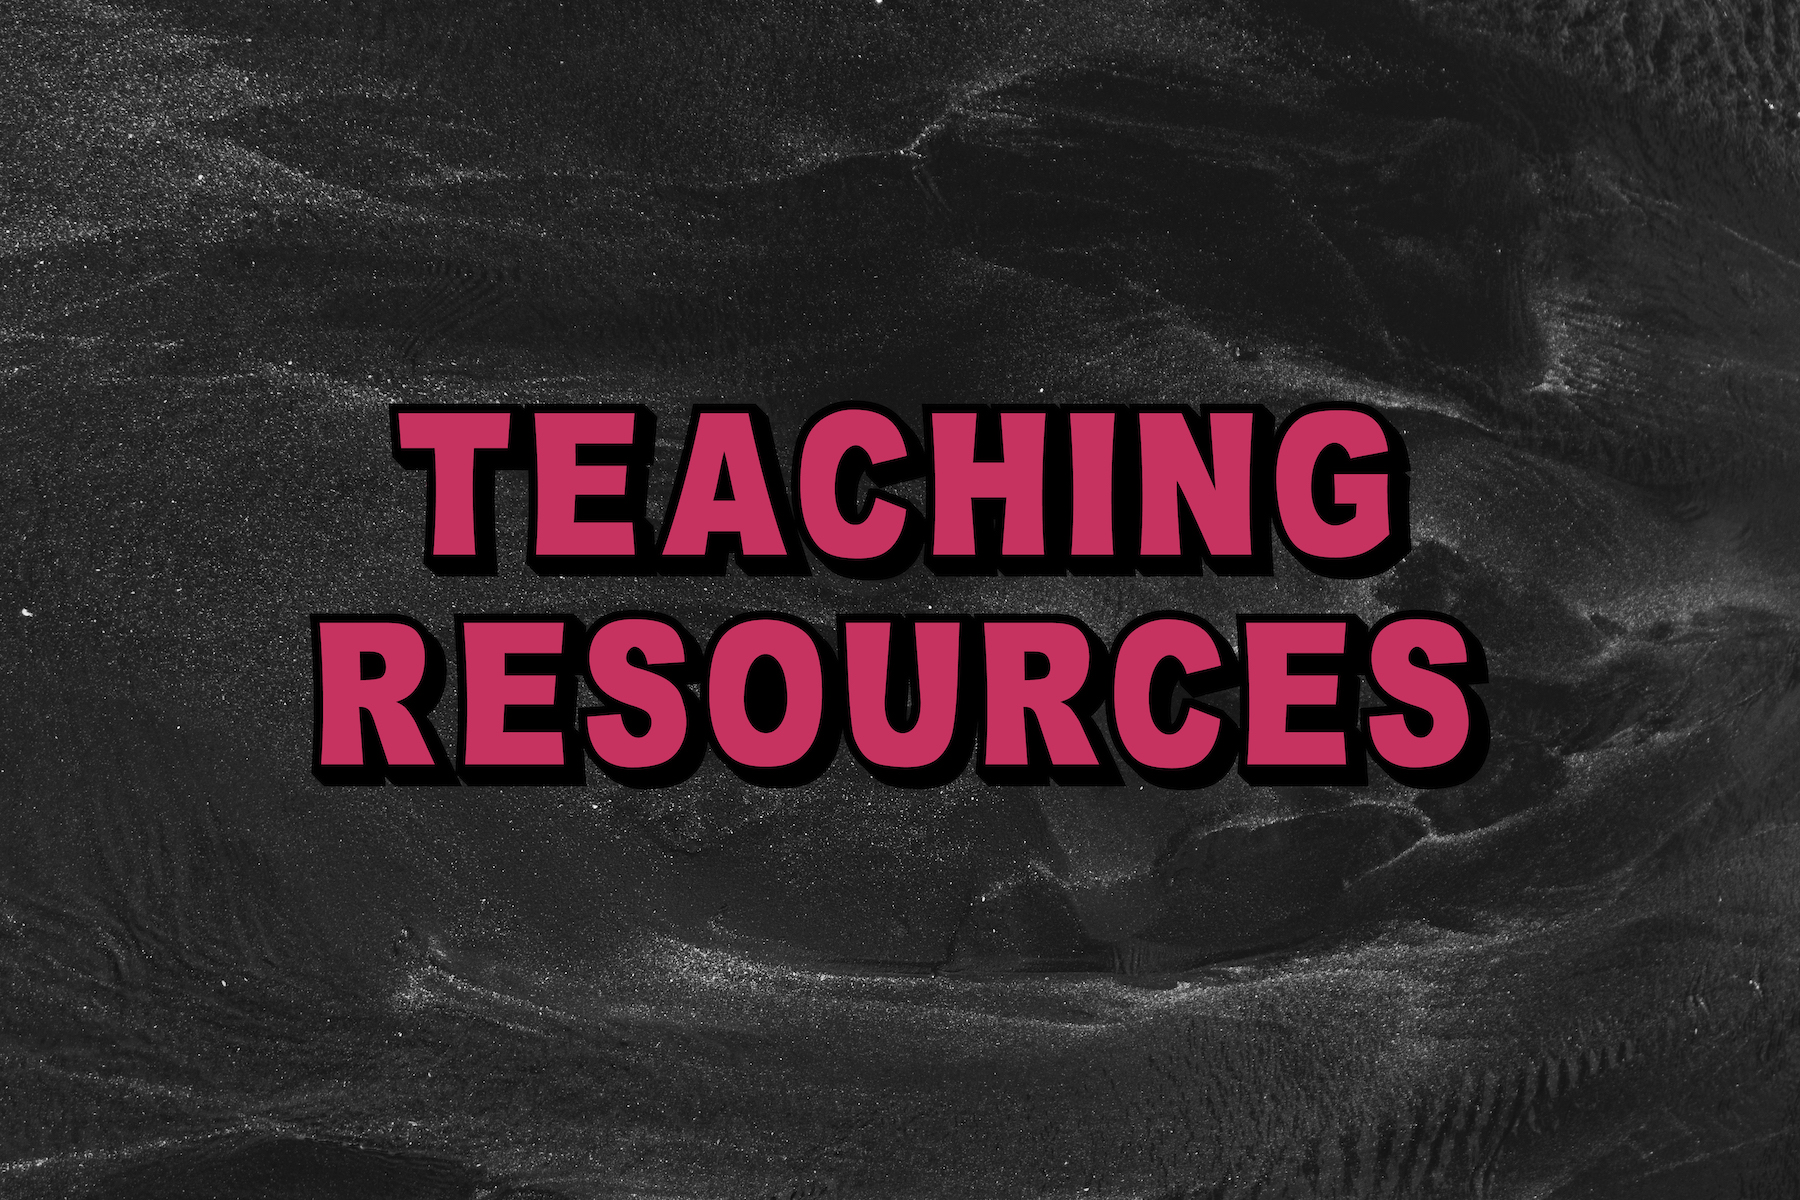 /content/dam/prh/articles/adults/2020/october/Merky-Teacher-Resources.jpg